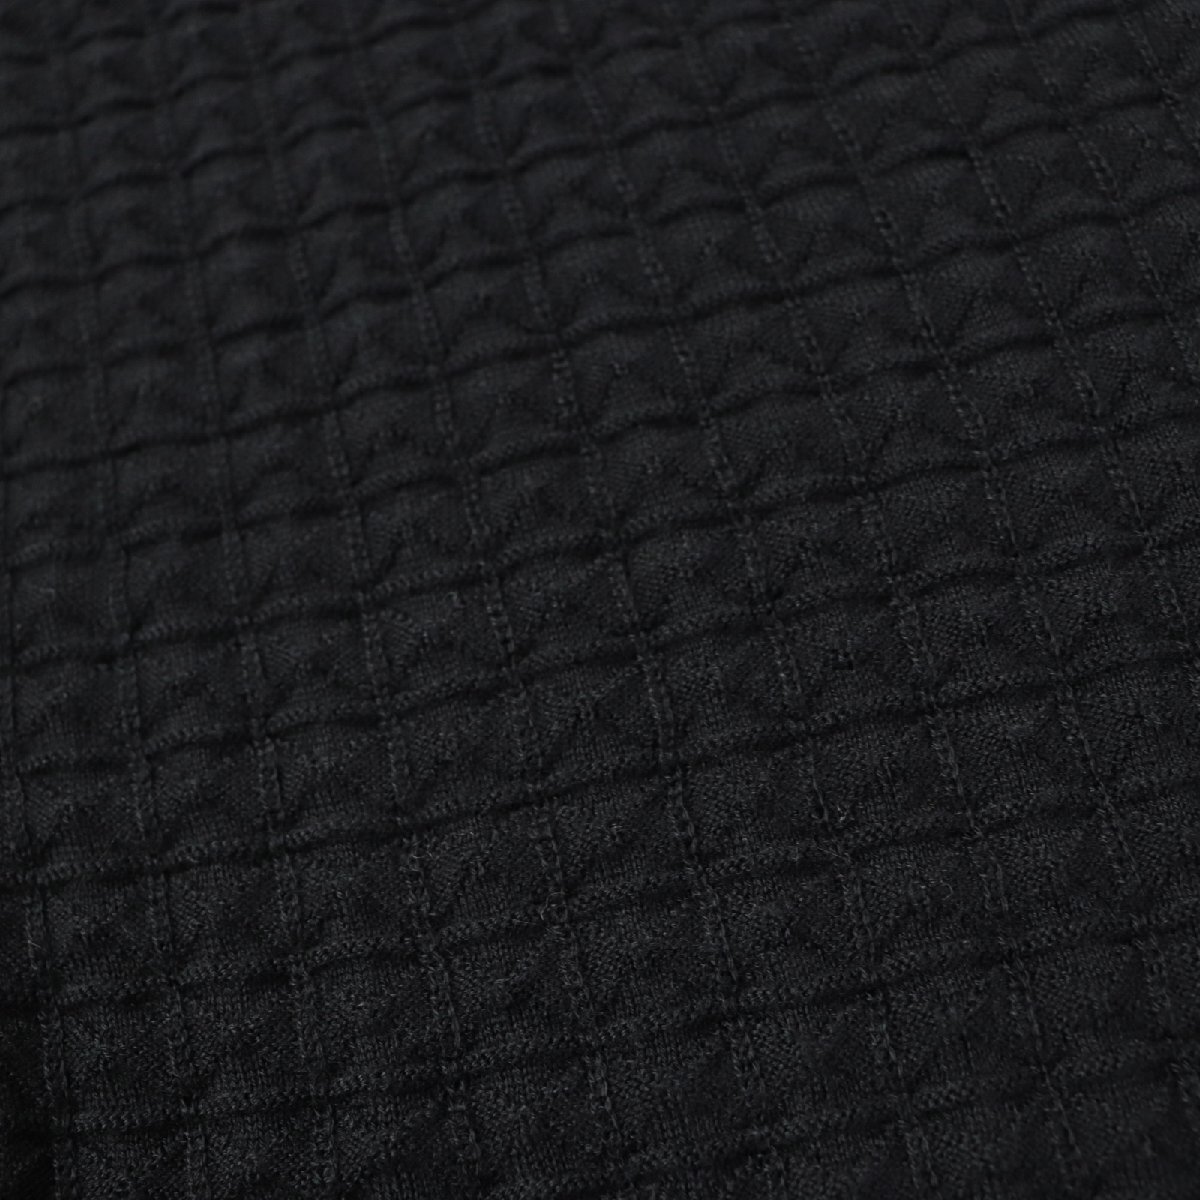  превосходный товар * Hermes 2019 год производства кашемир шелк me кукла плетеный Serie кнопка длинный рукав вязаный кардиган черный 38 сделано в Италии стандартный товар женский 